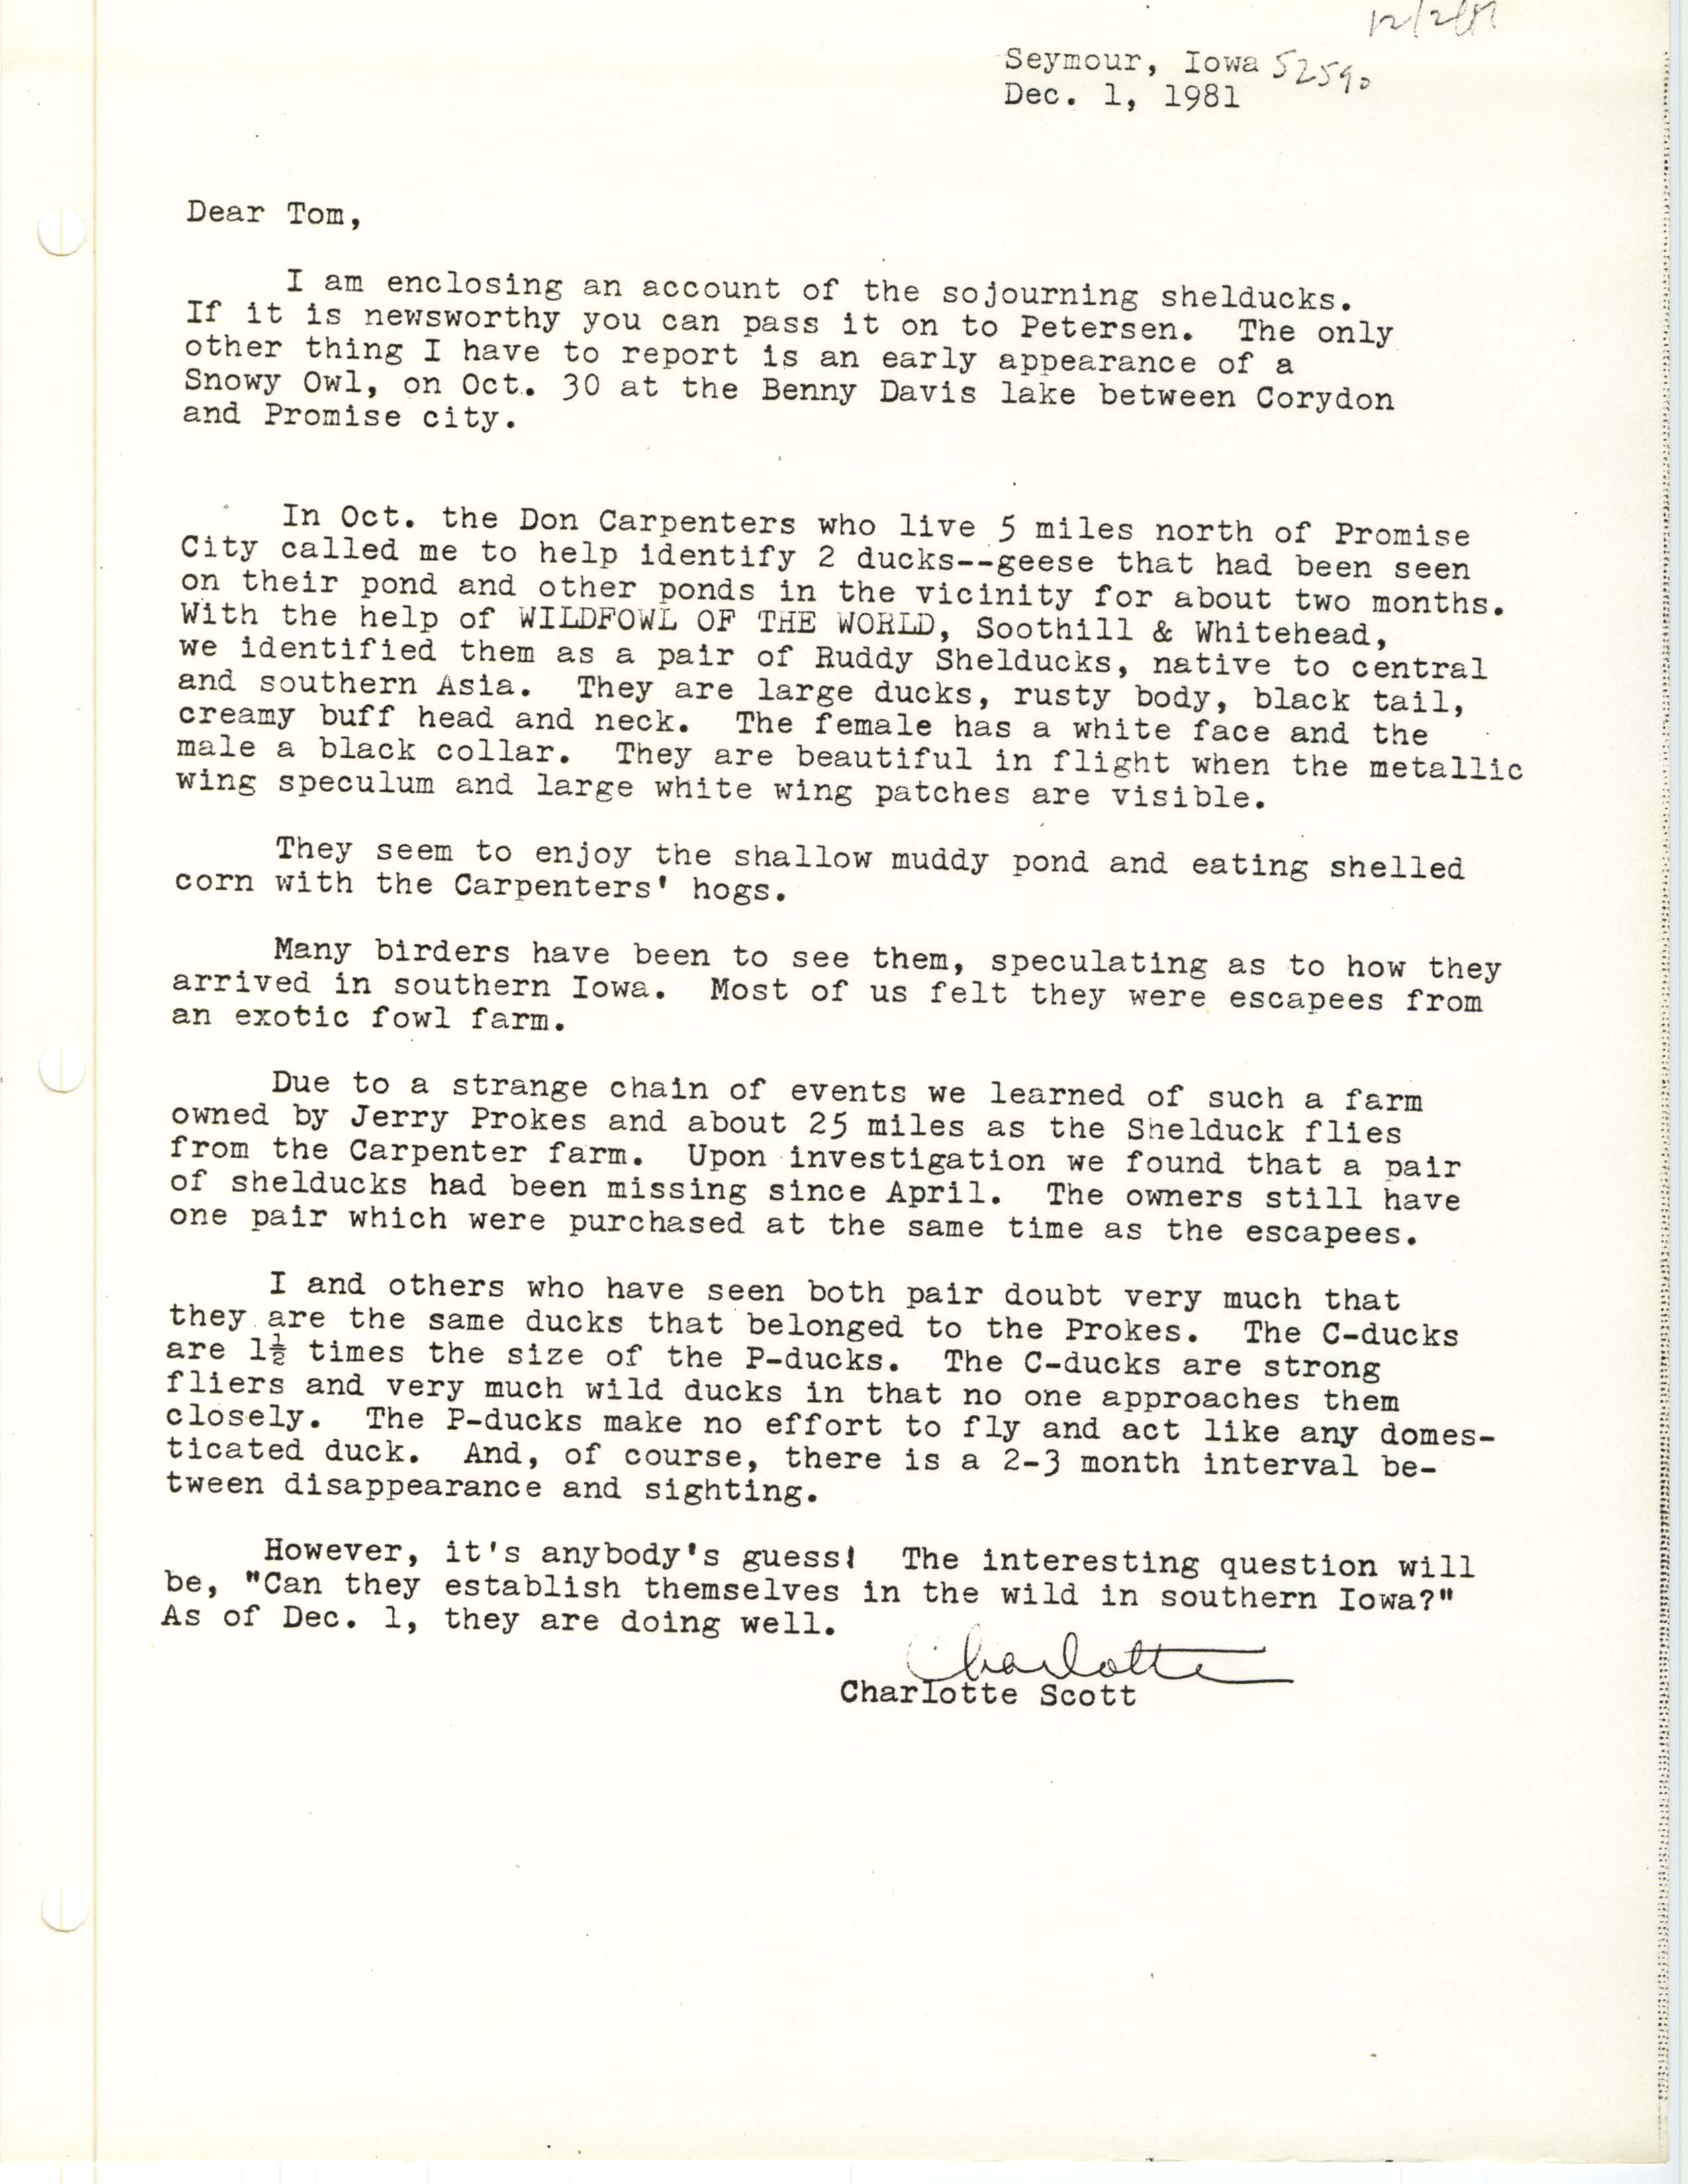 Charlotte Scott letter to Thomas Kent regarding Ruddy Shelduck sightings, December 1, 1981